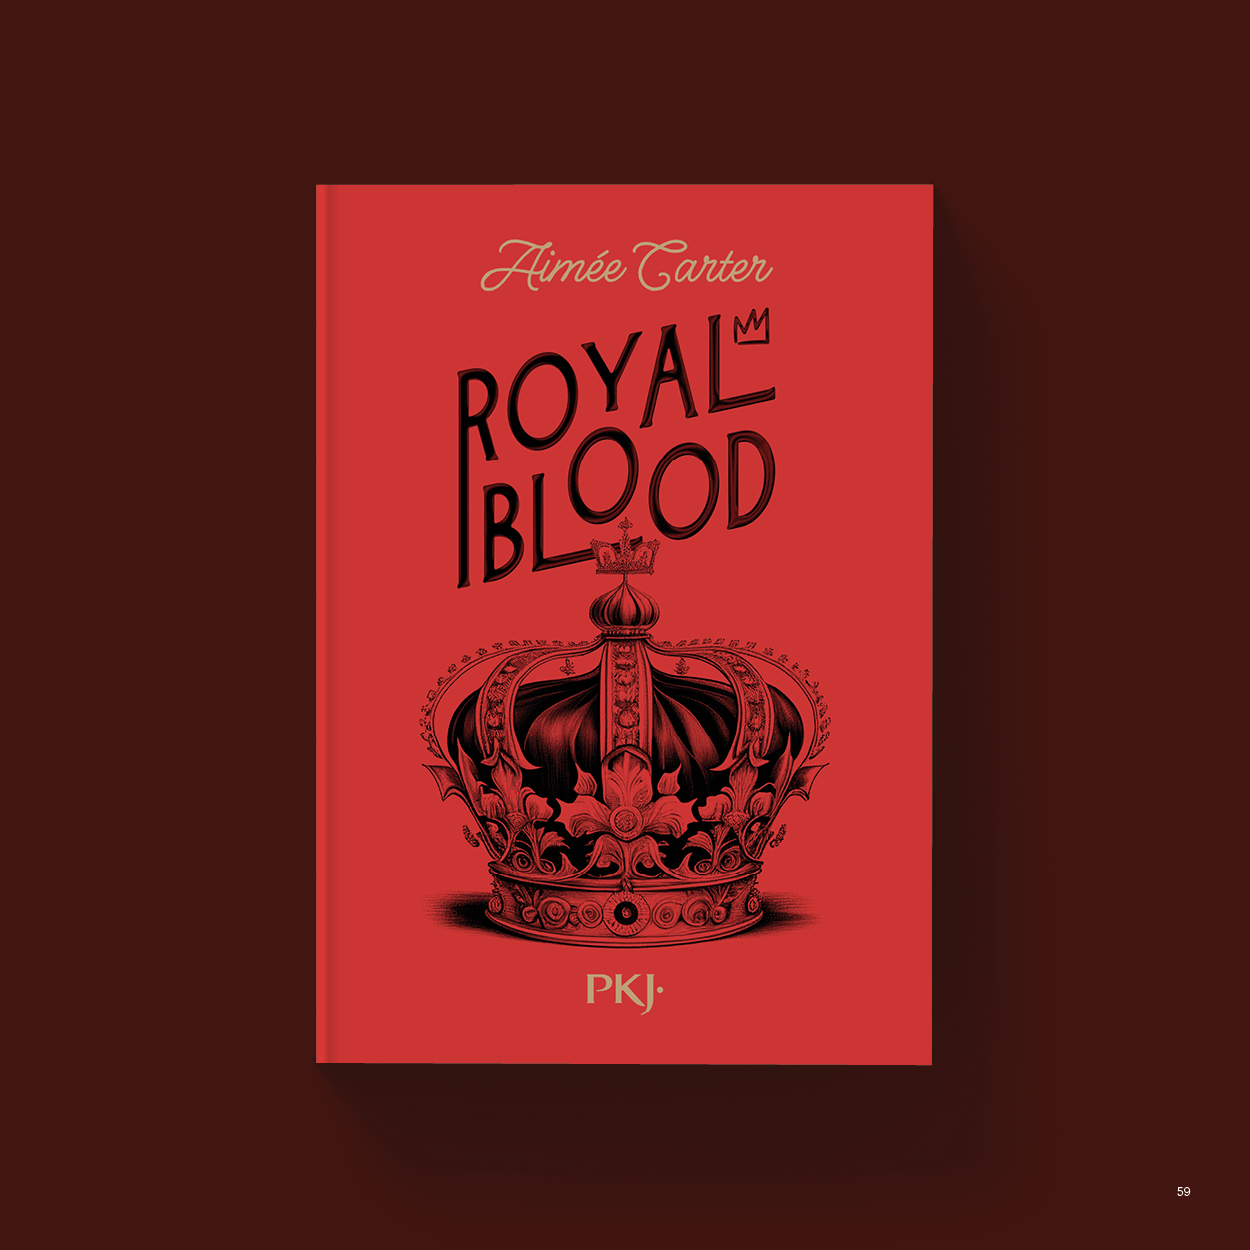 Vue_Royal_blood_59